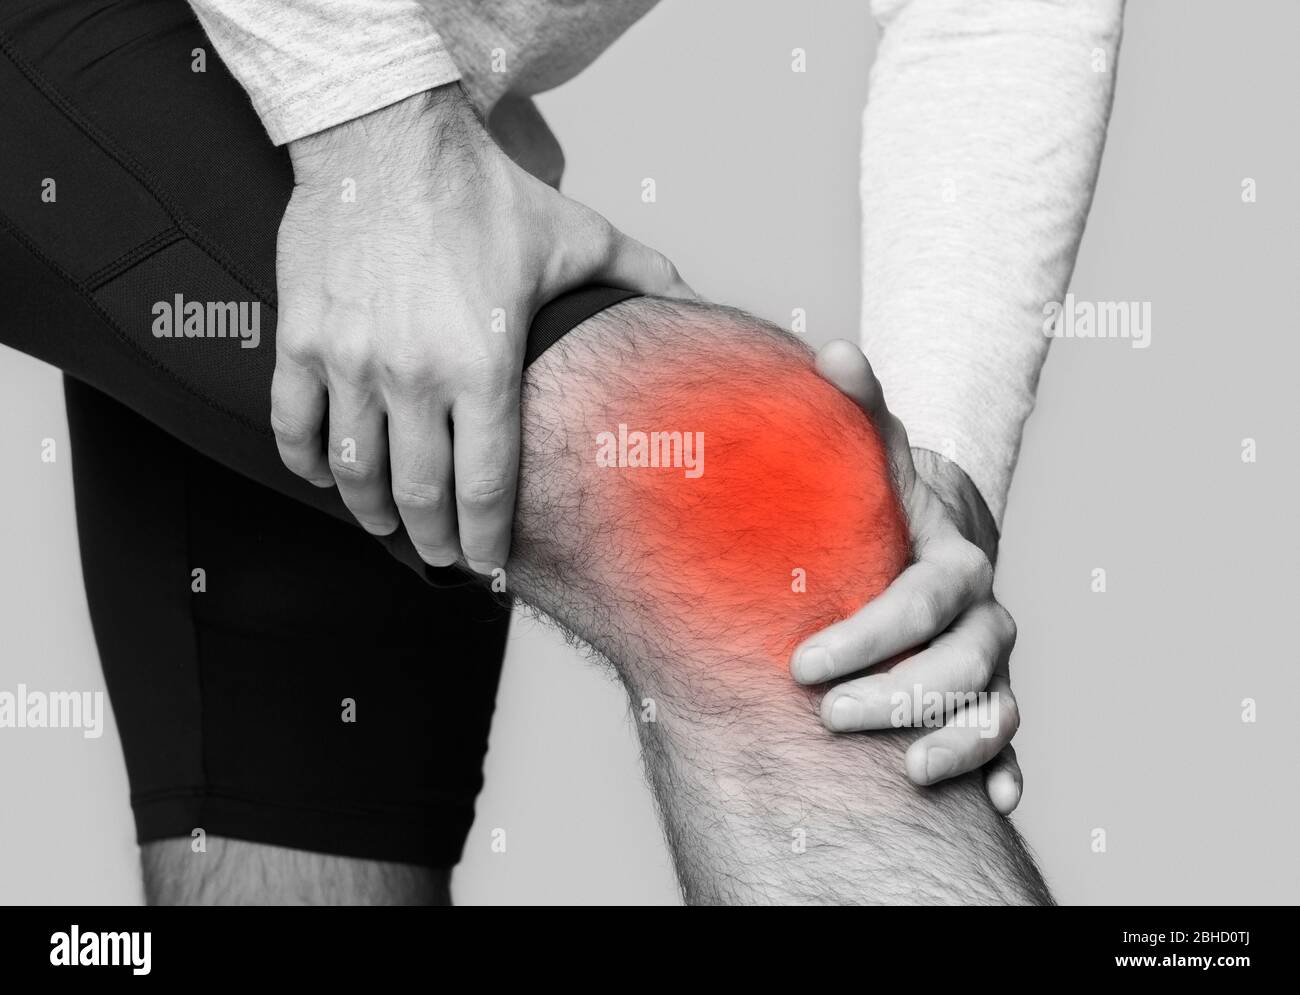 Uomo con dolore al ginocchio, evidenziato in rosso Foto Stock